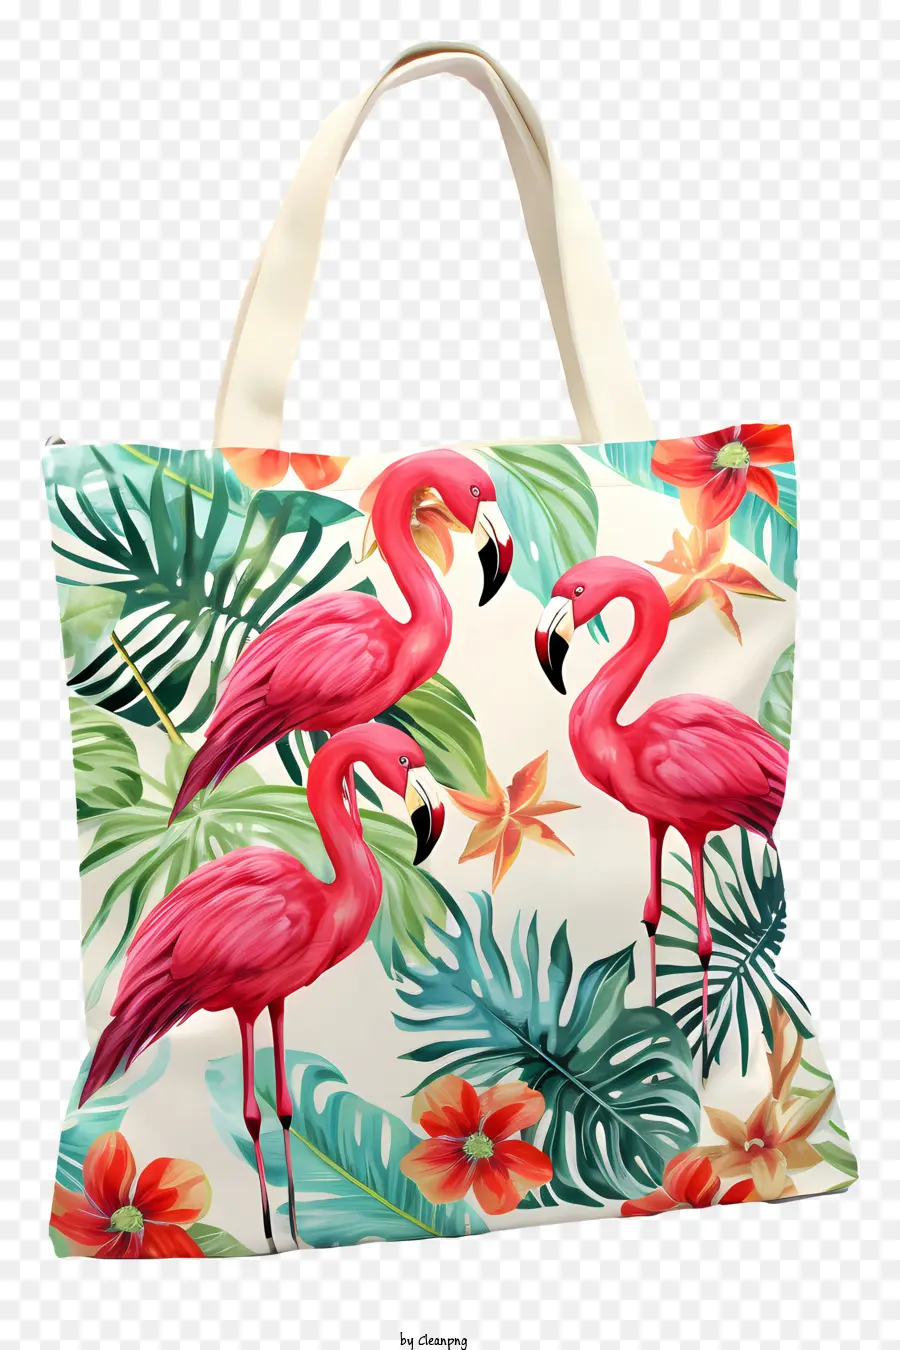 Einkaufstasche Einkaufstasche Pink Flamingo Muster Floraler Druck großer Einkaufstasche - Blumentasche mit rosa Flamingo -Muster